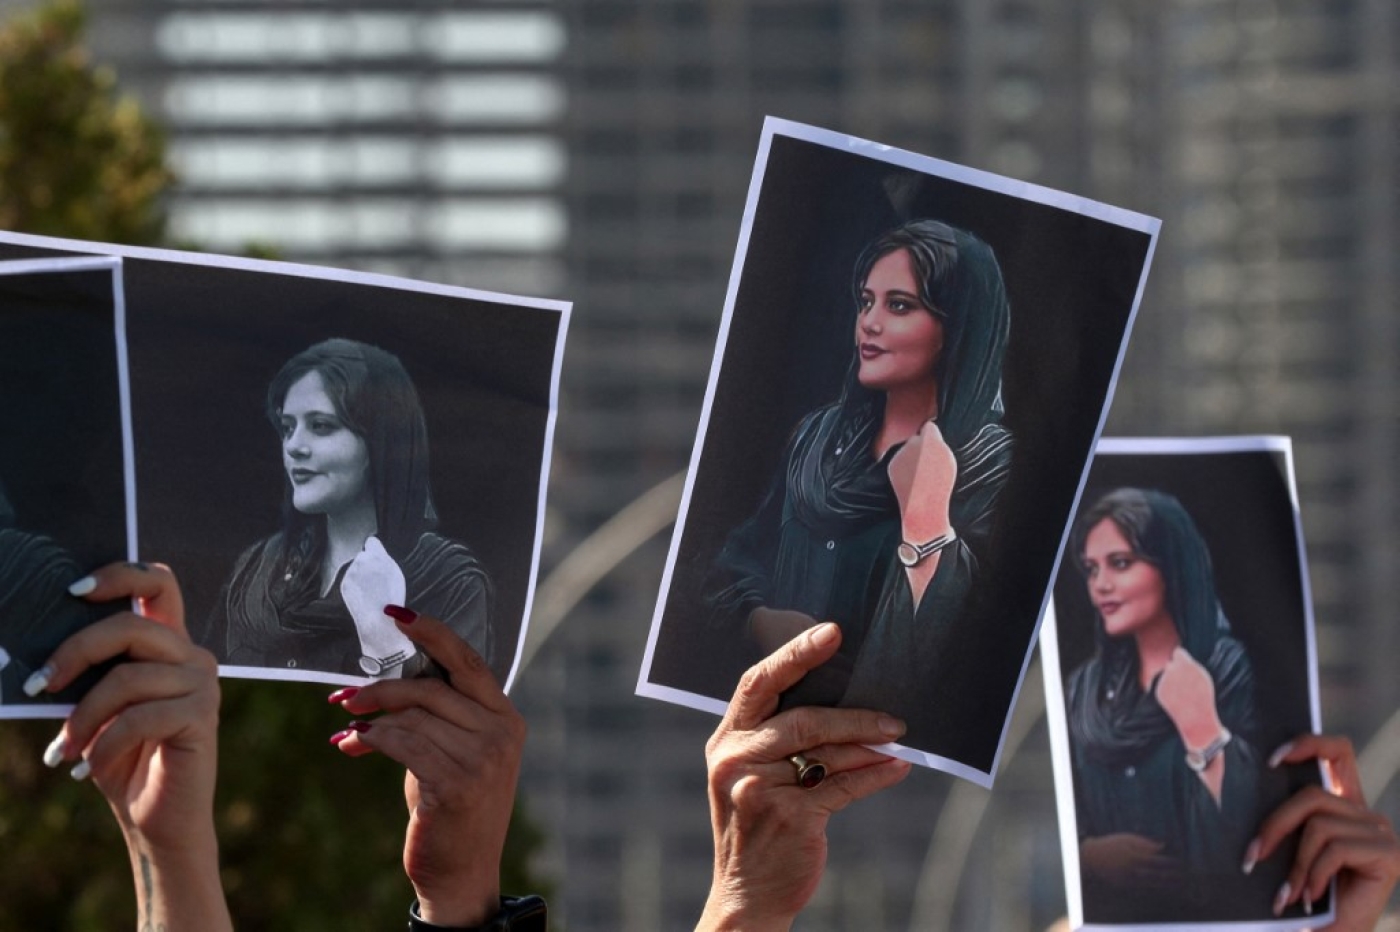 Des femmes brandissent des pancartes imprimées de la photo de Mahsa Amini, décédée à 22 ans alors qu’elle était détenue par les autorités iraniennes, lors d’une manifestation dénonçant sa mort devant les bureaux de l’ONU à Erbil, la capitale du Kurdistan autonome d’Irak, le 24 septembre 2022 (AFP/Safin Ahmed)